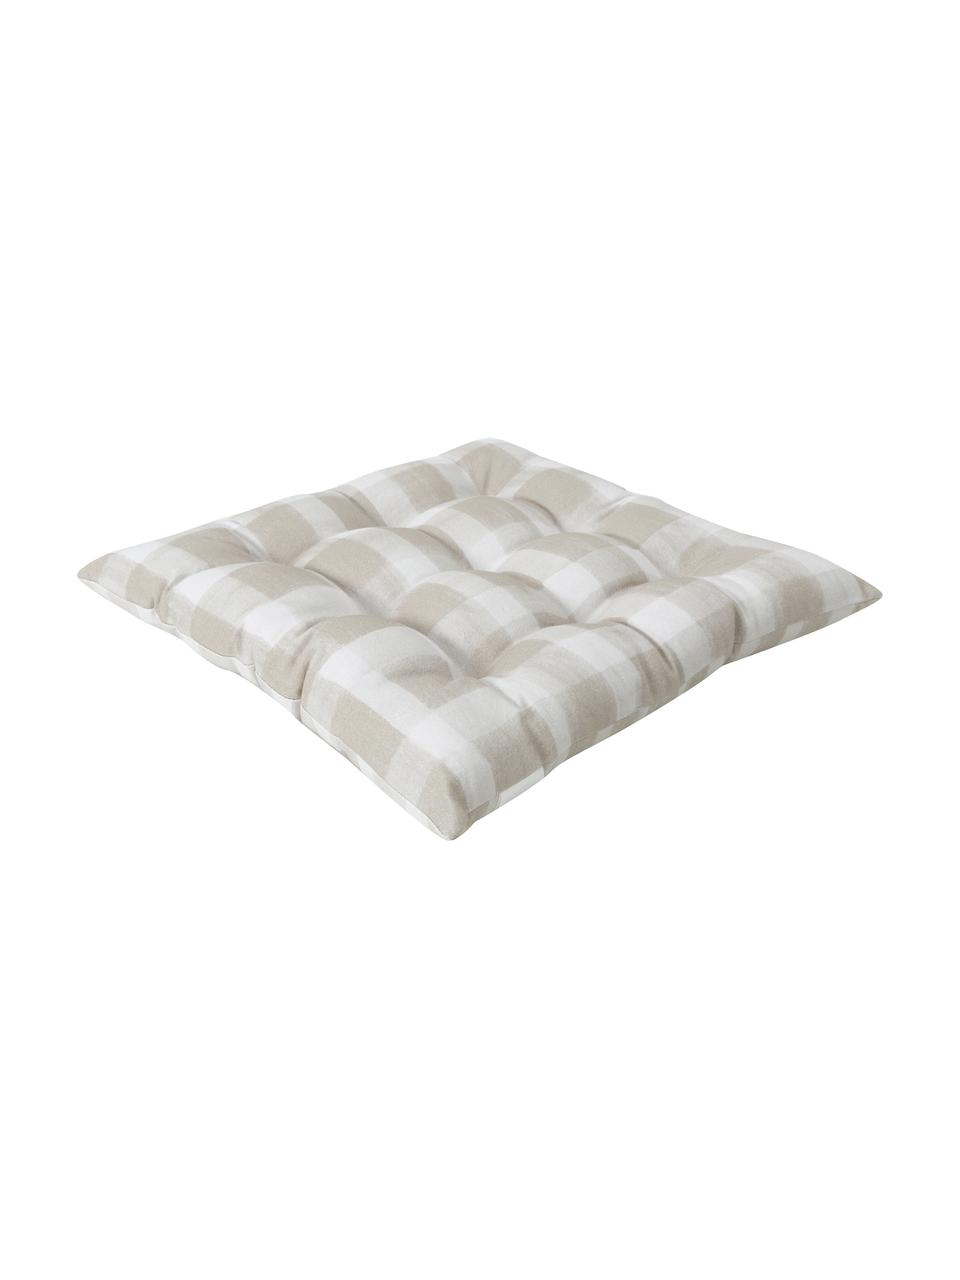 Kariertes Baumwoll-Sitzkissen Milène in Beige, Bezug: 100% Baumwolle, Beige, B 40 x L 40 cm